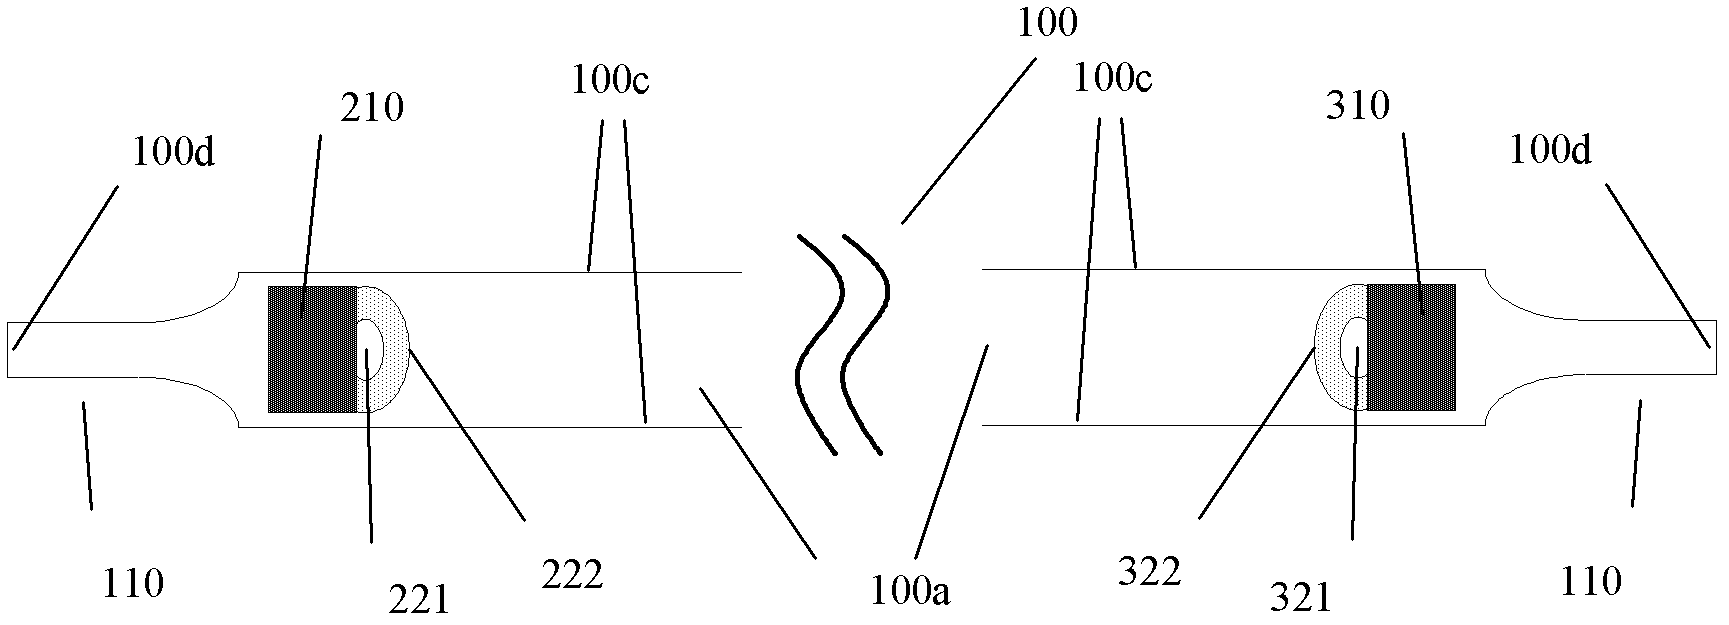 Millimeter wave waveguide communication system